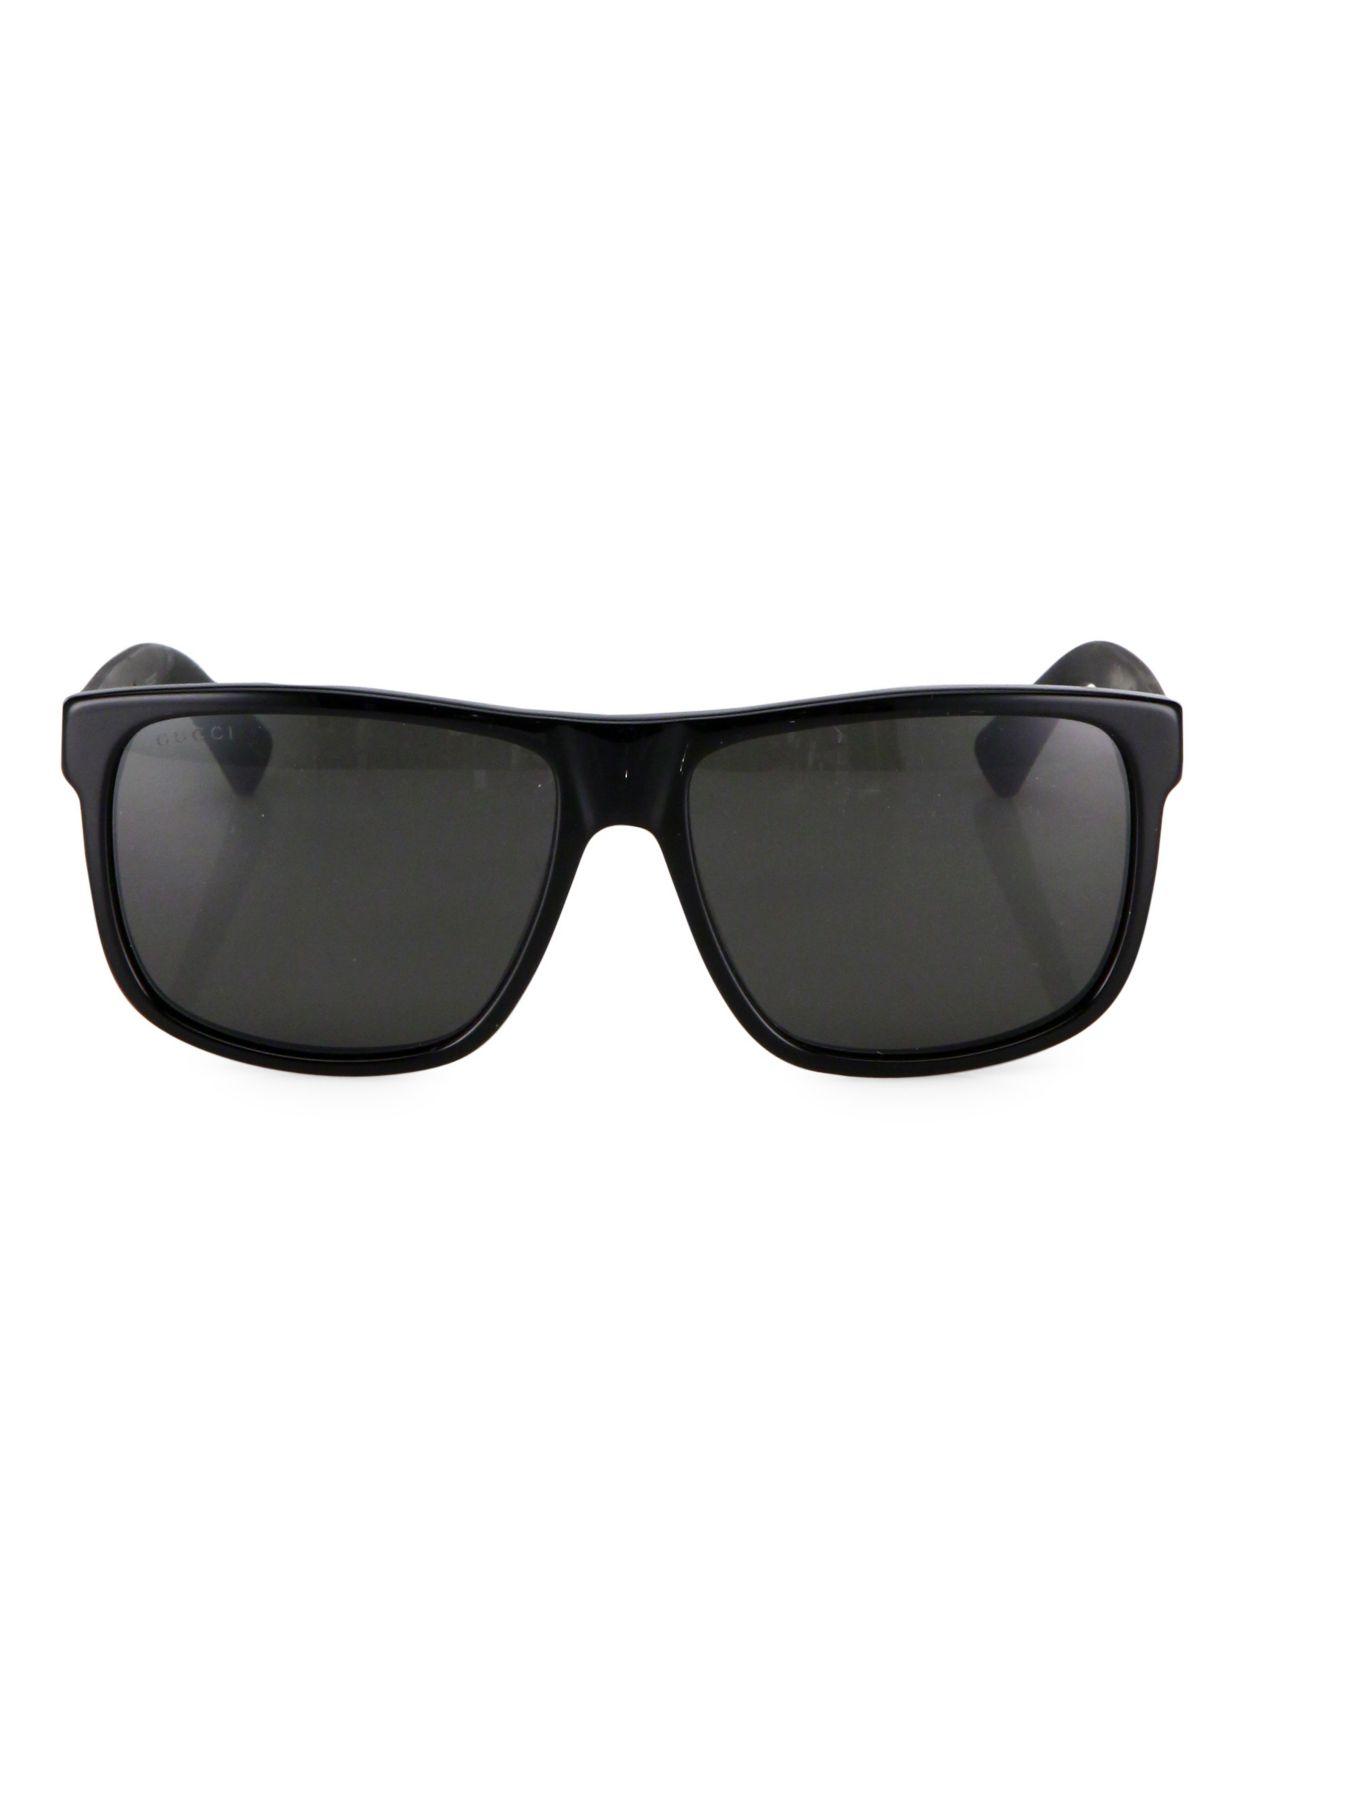 Gucci 58mm Square Sunglasses in Black for Men - Lyst